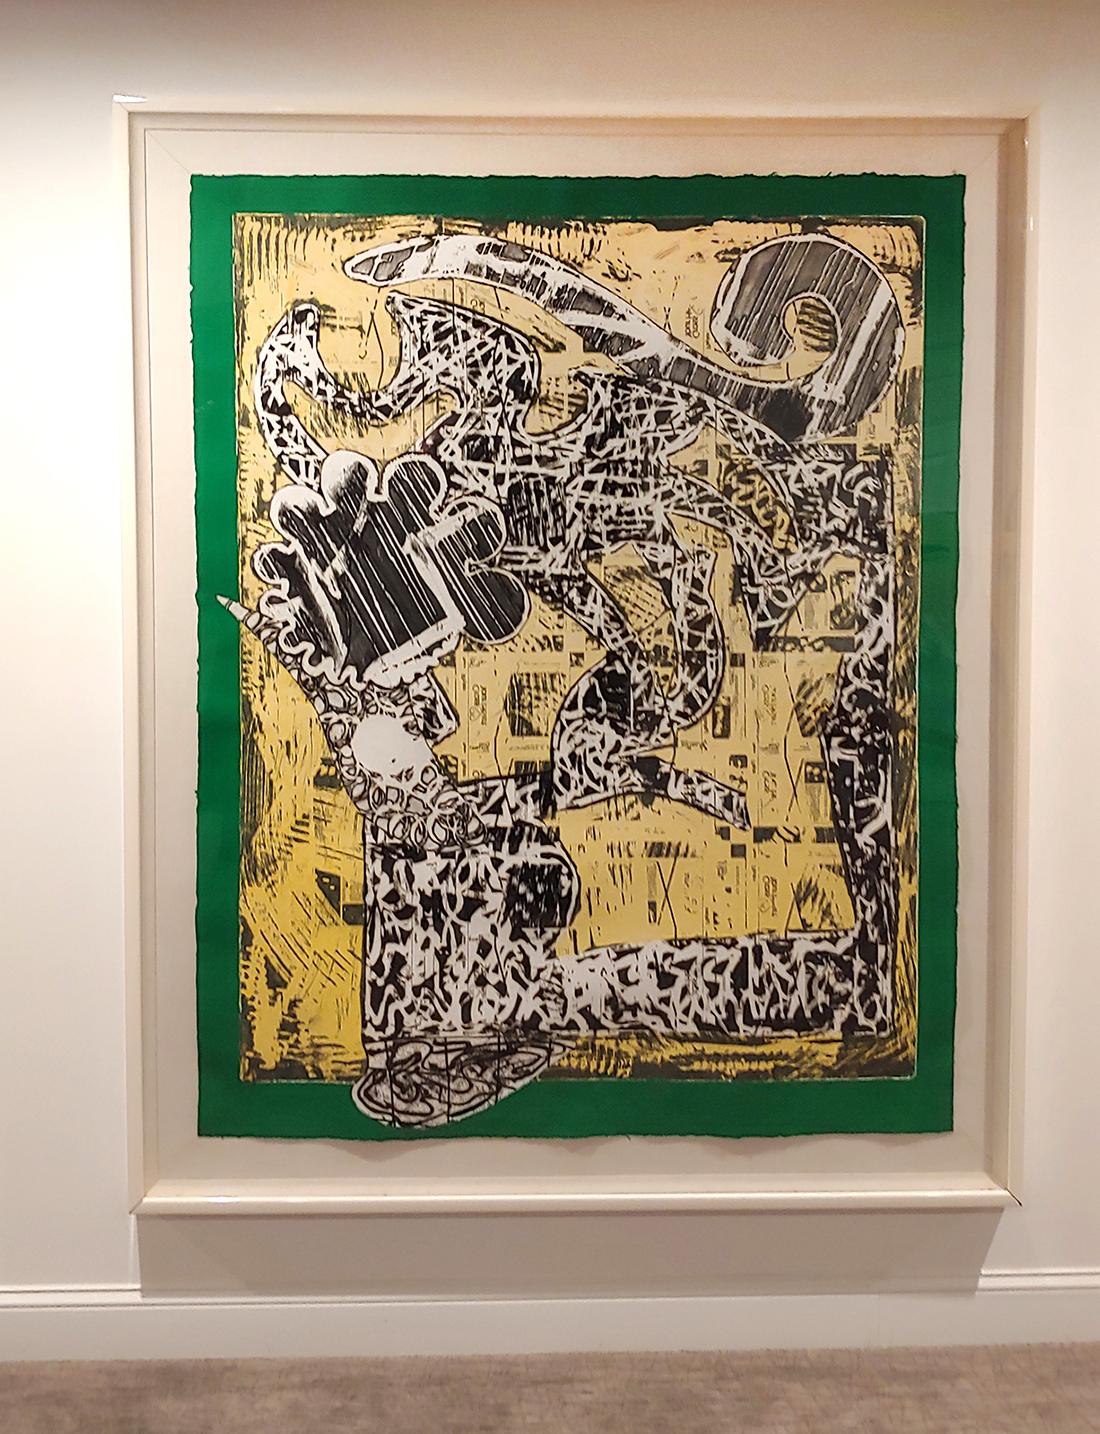 Das Werk des Blue-Chip-Künstlers Frank Stella befindet sich in den Sammlungen aller großen Museen weltweit.  Im Jahr 2019 wurde ein Werk von ihm bei Christies für über 28 Millionen Dollar verkauft.

Diese Radierung, der Siebdruck und das Relief auf